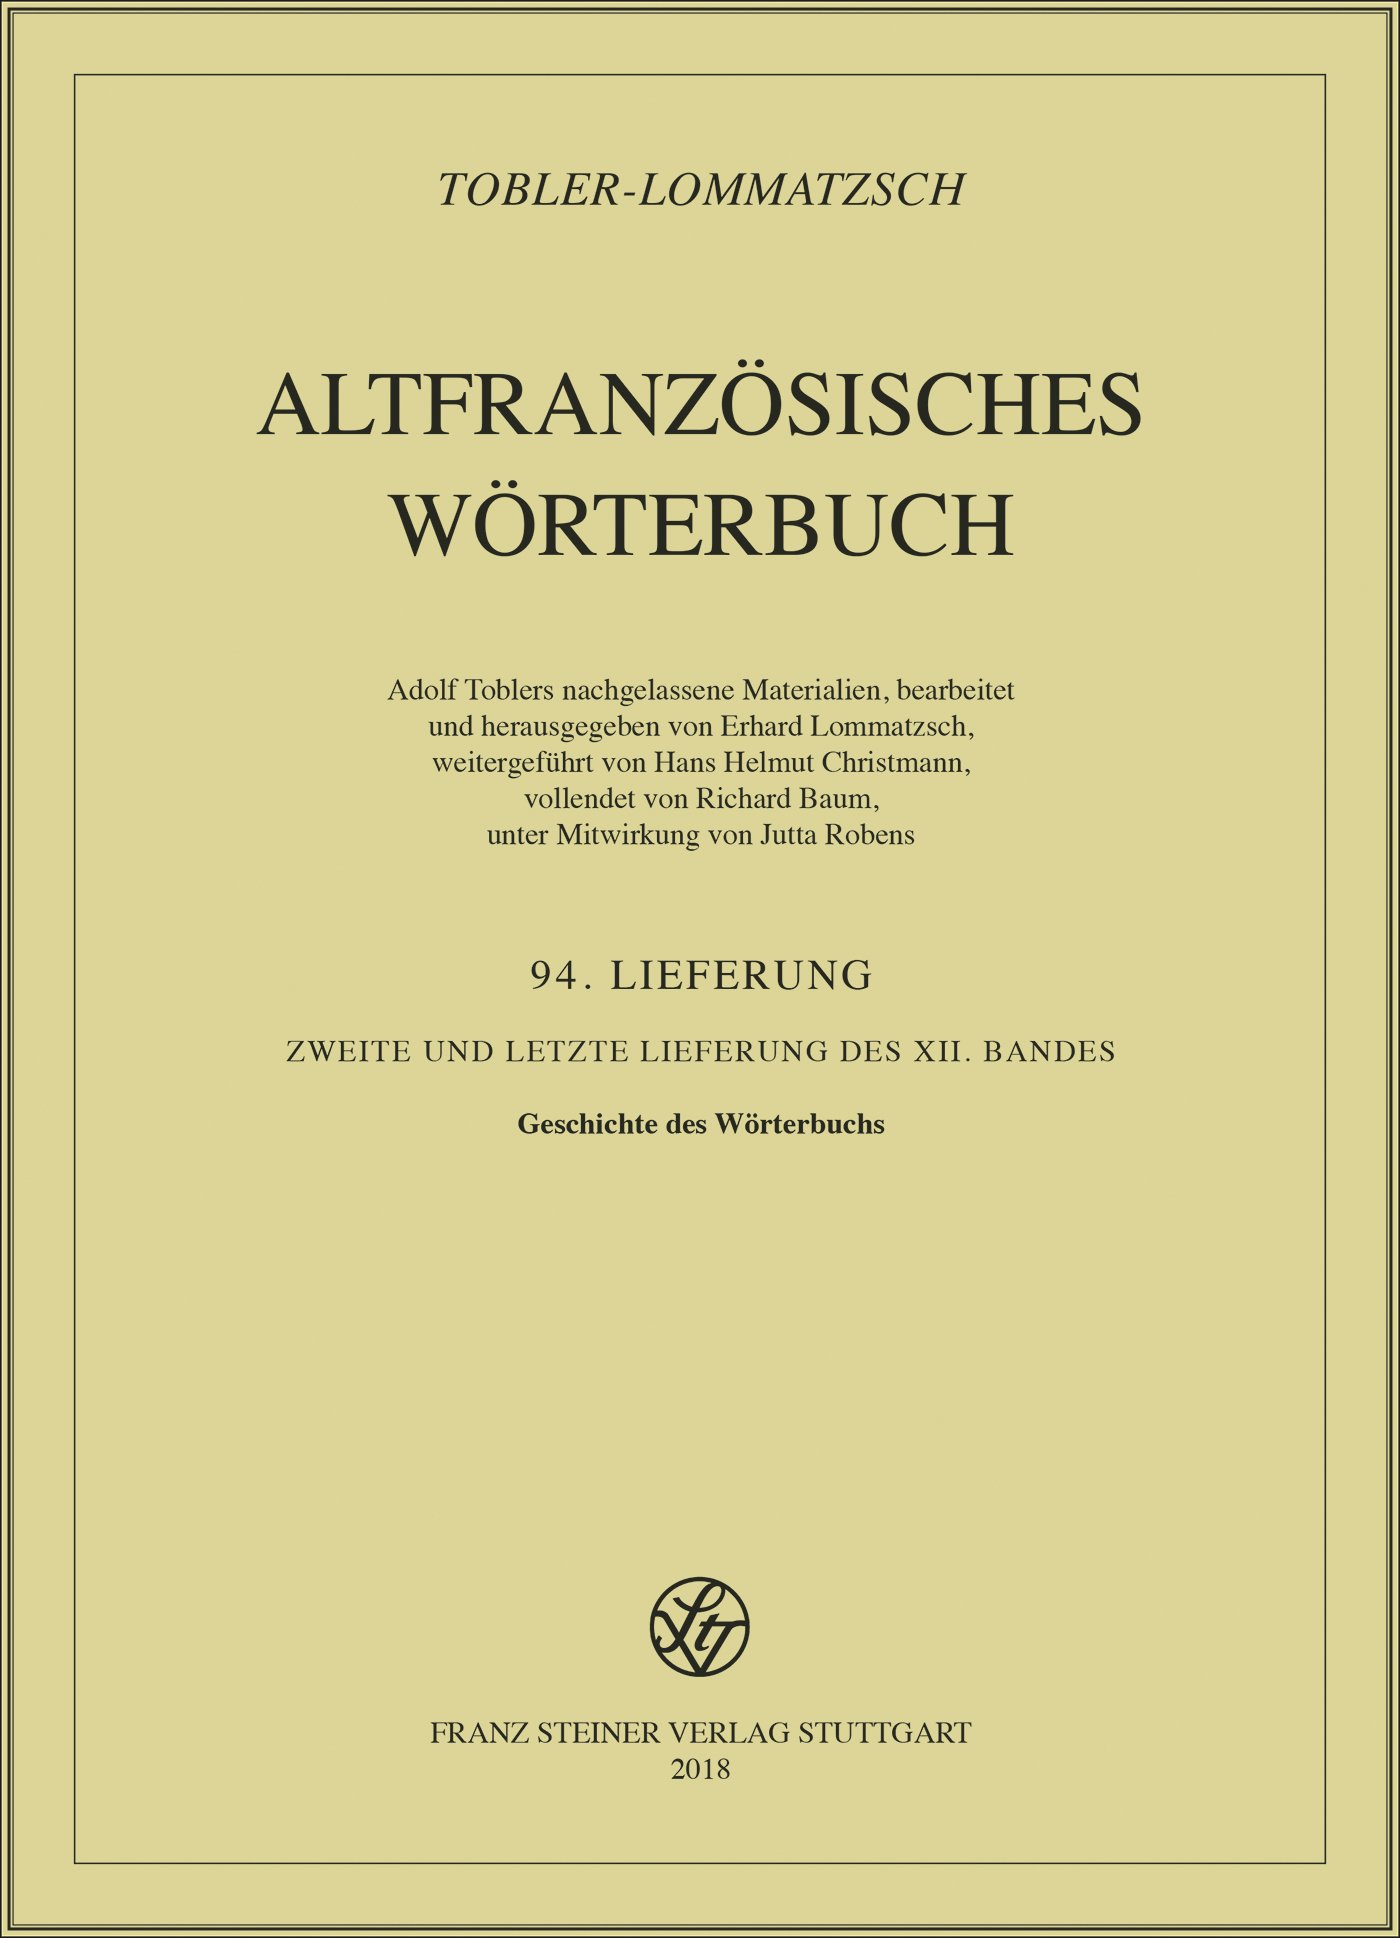 Altfranzösisches Wörterbuch. Band 12. Lieferung 94